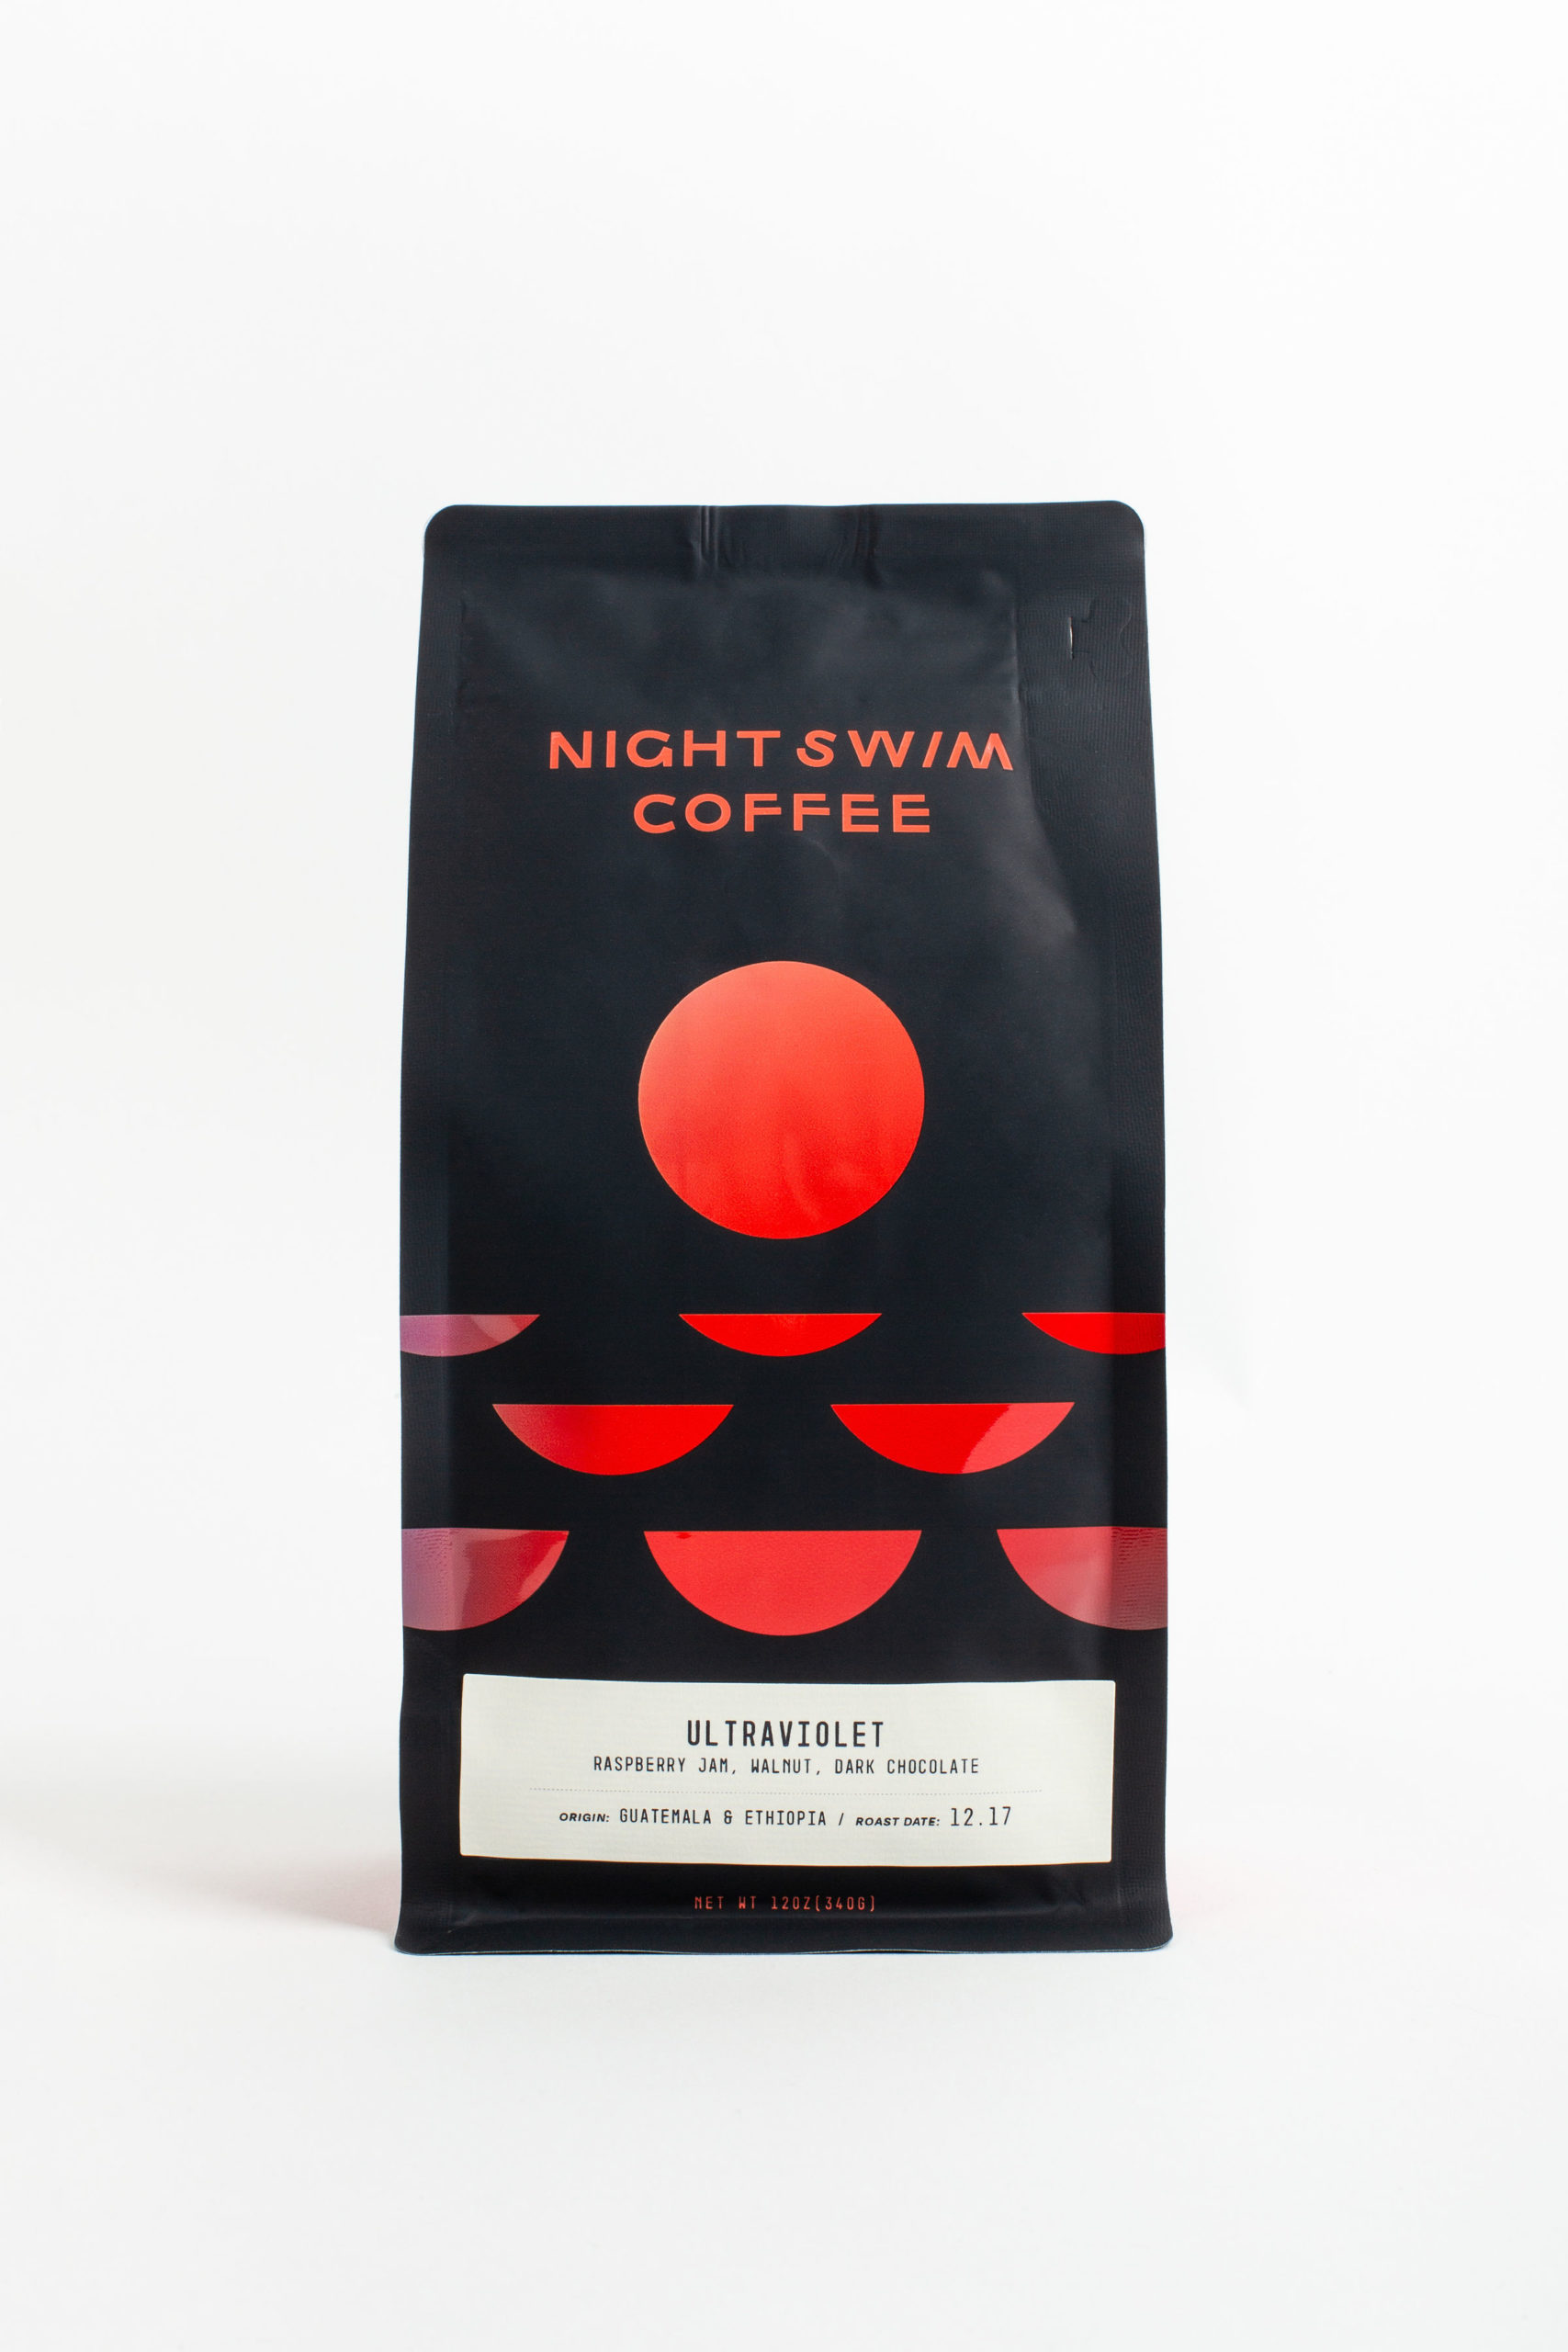 night swim coffee design sprudge 7